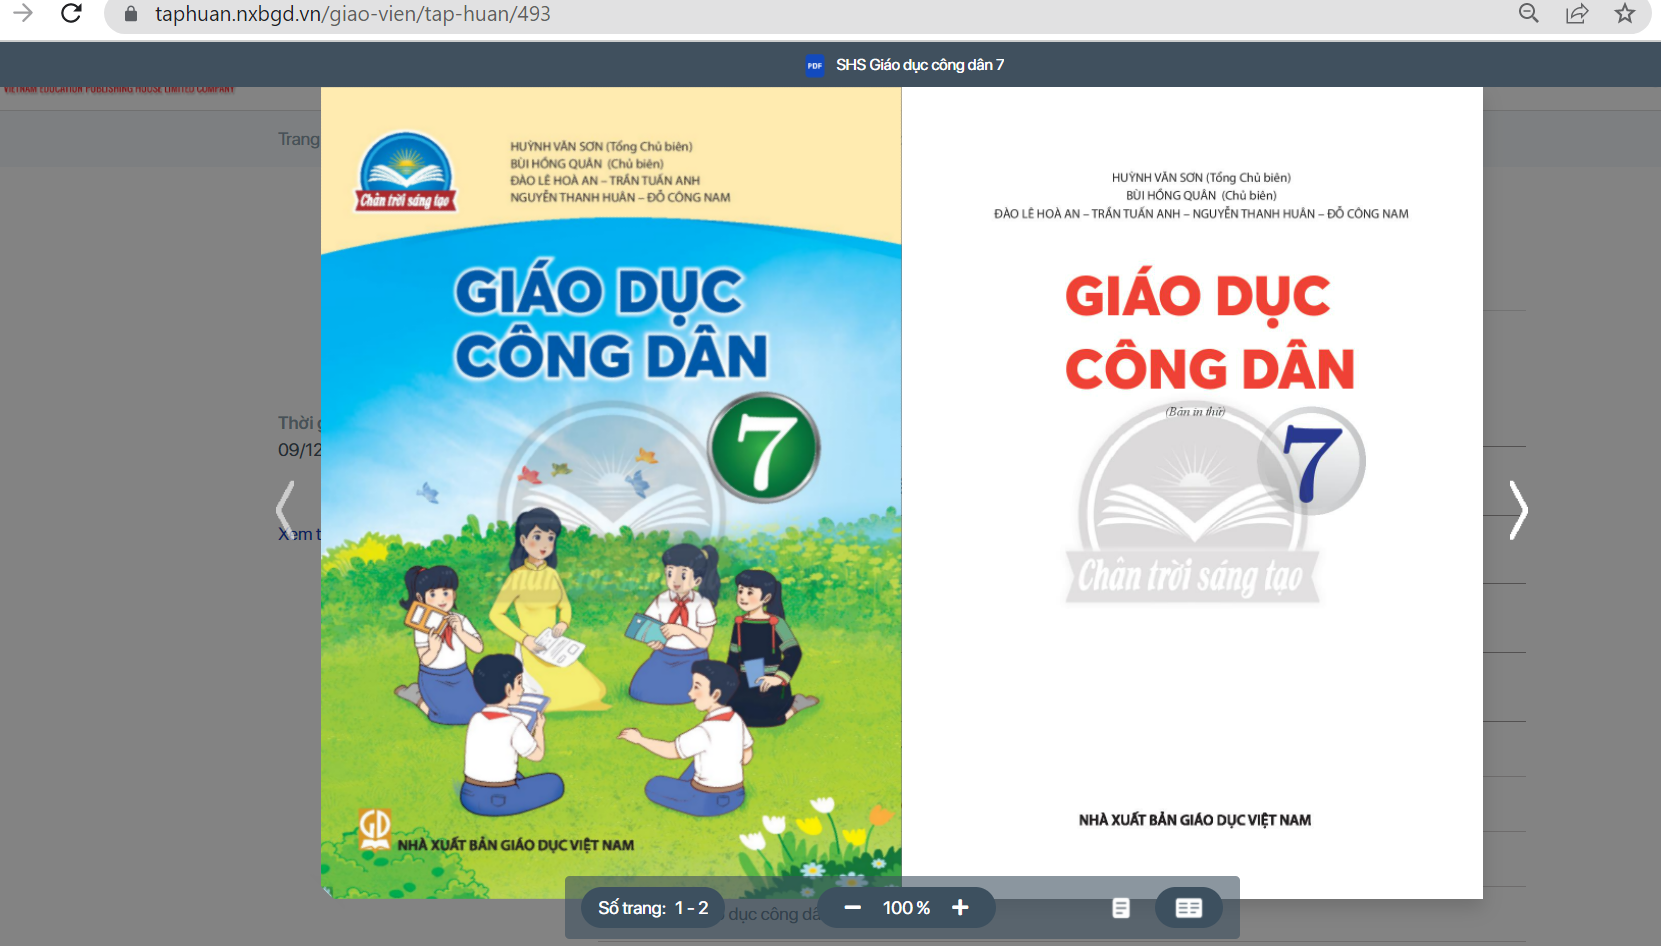 SGK Giáo dục công dân 7 Chân trời sáng tạo pdf | Tải PDF và xem trực tuyến | GDCD 7 (ảnh 1)